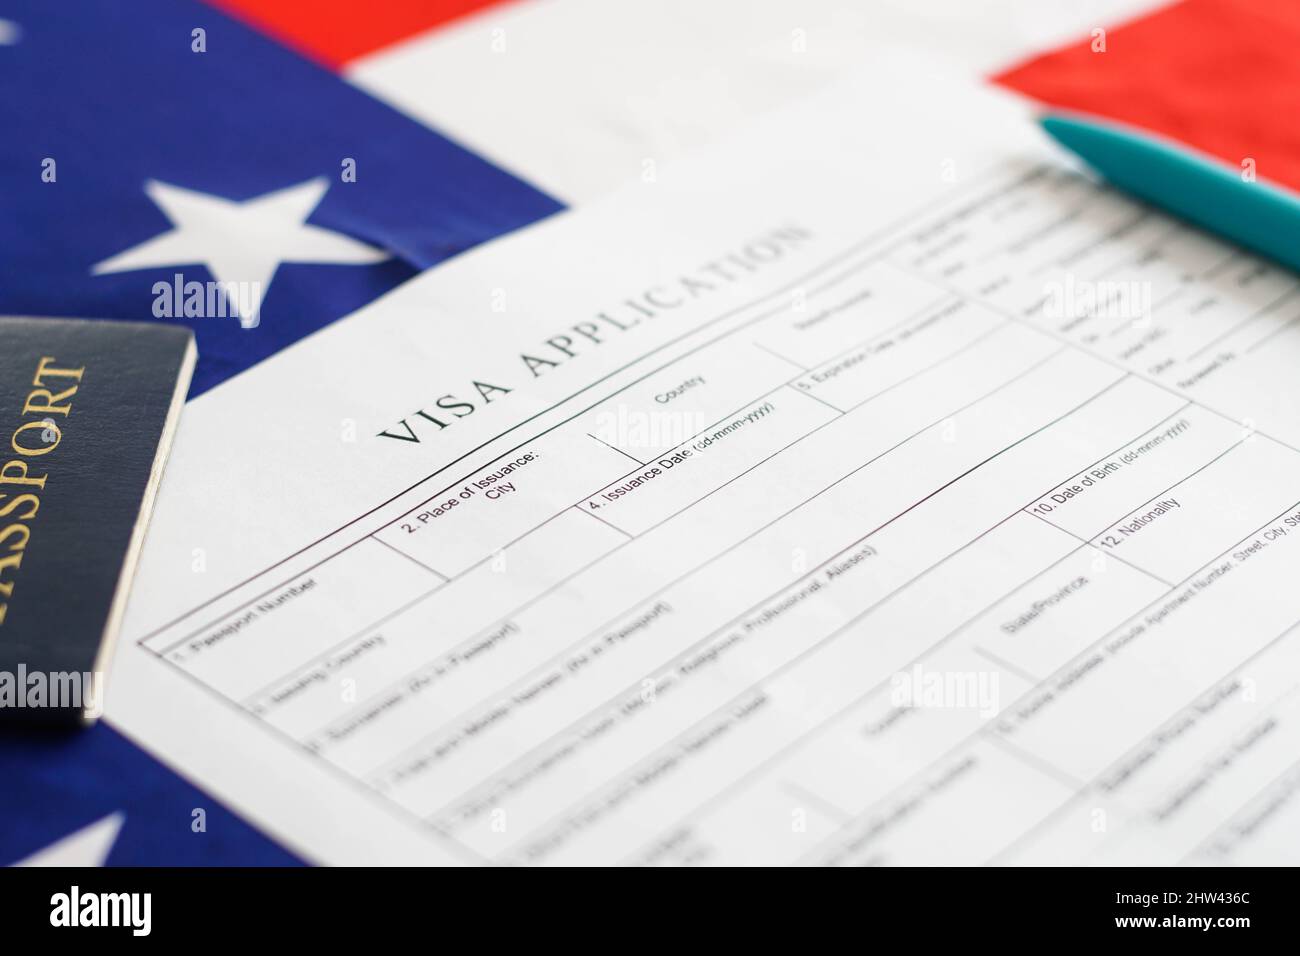 Frau, die das Antragsformular für das Visum ausgefüllt hat. Amerikanische Flagge auf dem Hintergrund. Einwanderung in die USA. Stockfoto